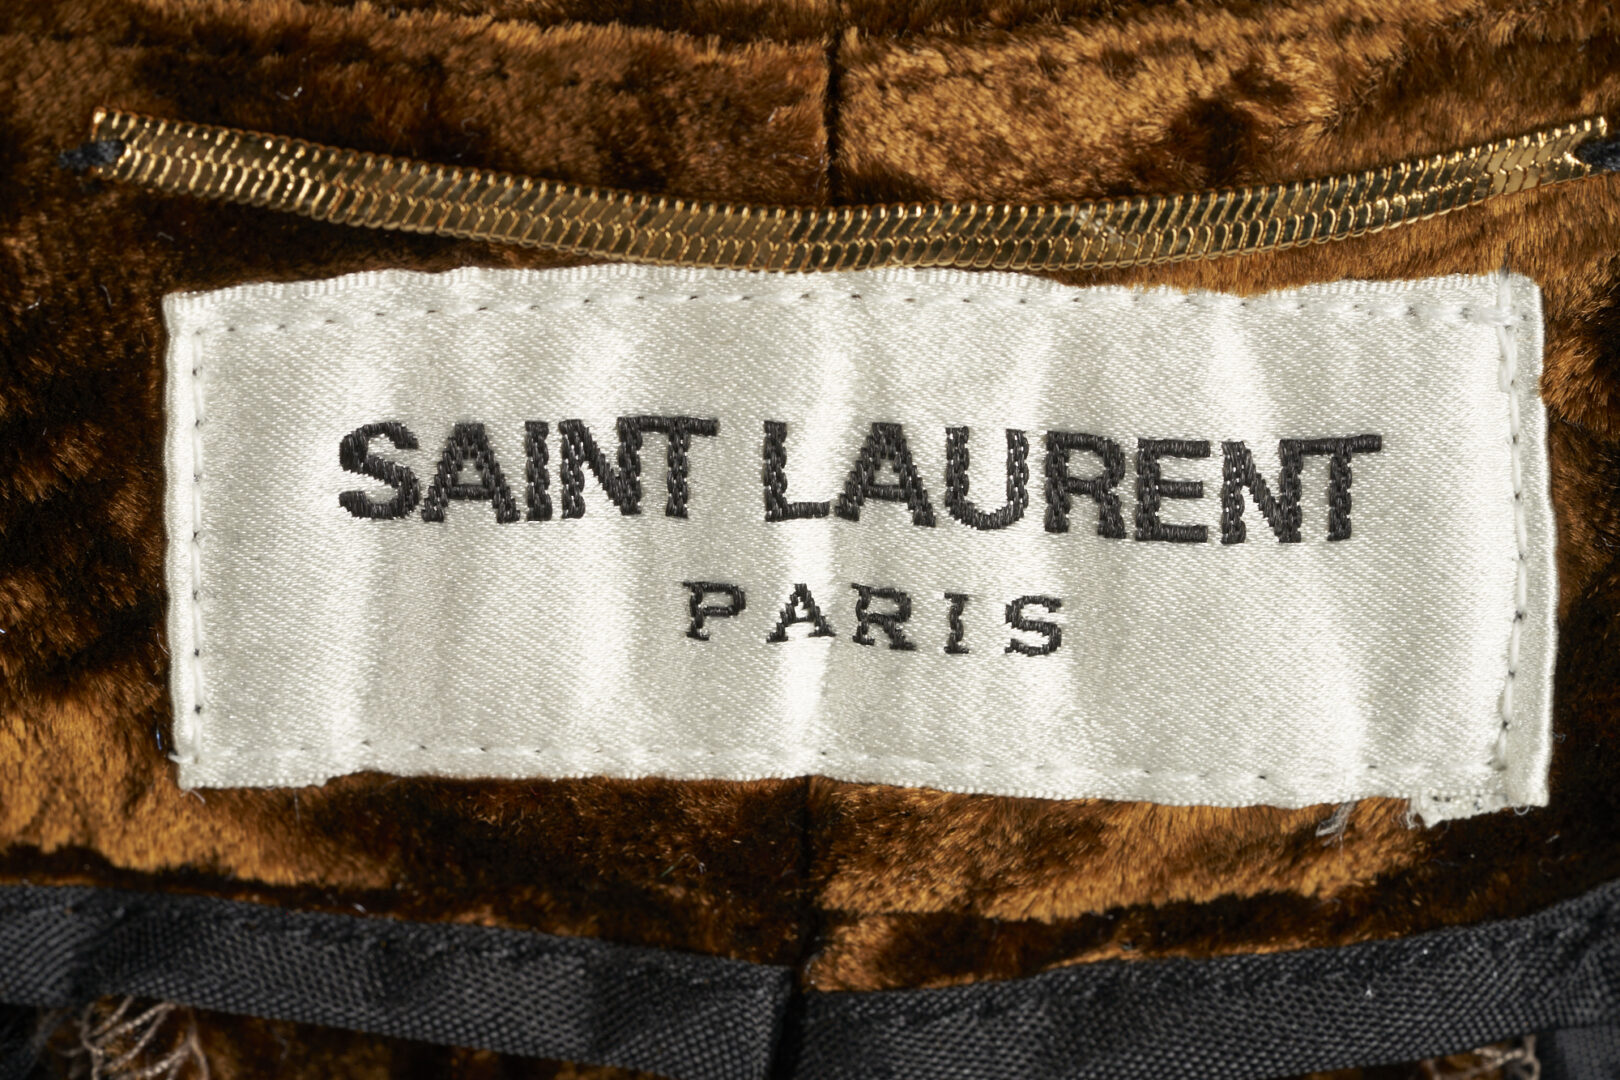 Lot 805: 4 Saint Laurent & 1 BCBG Max Azrai Garments